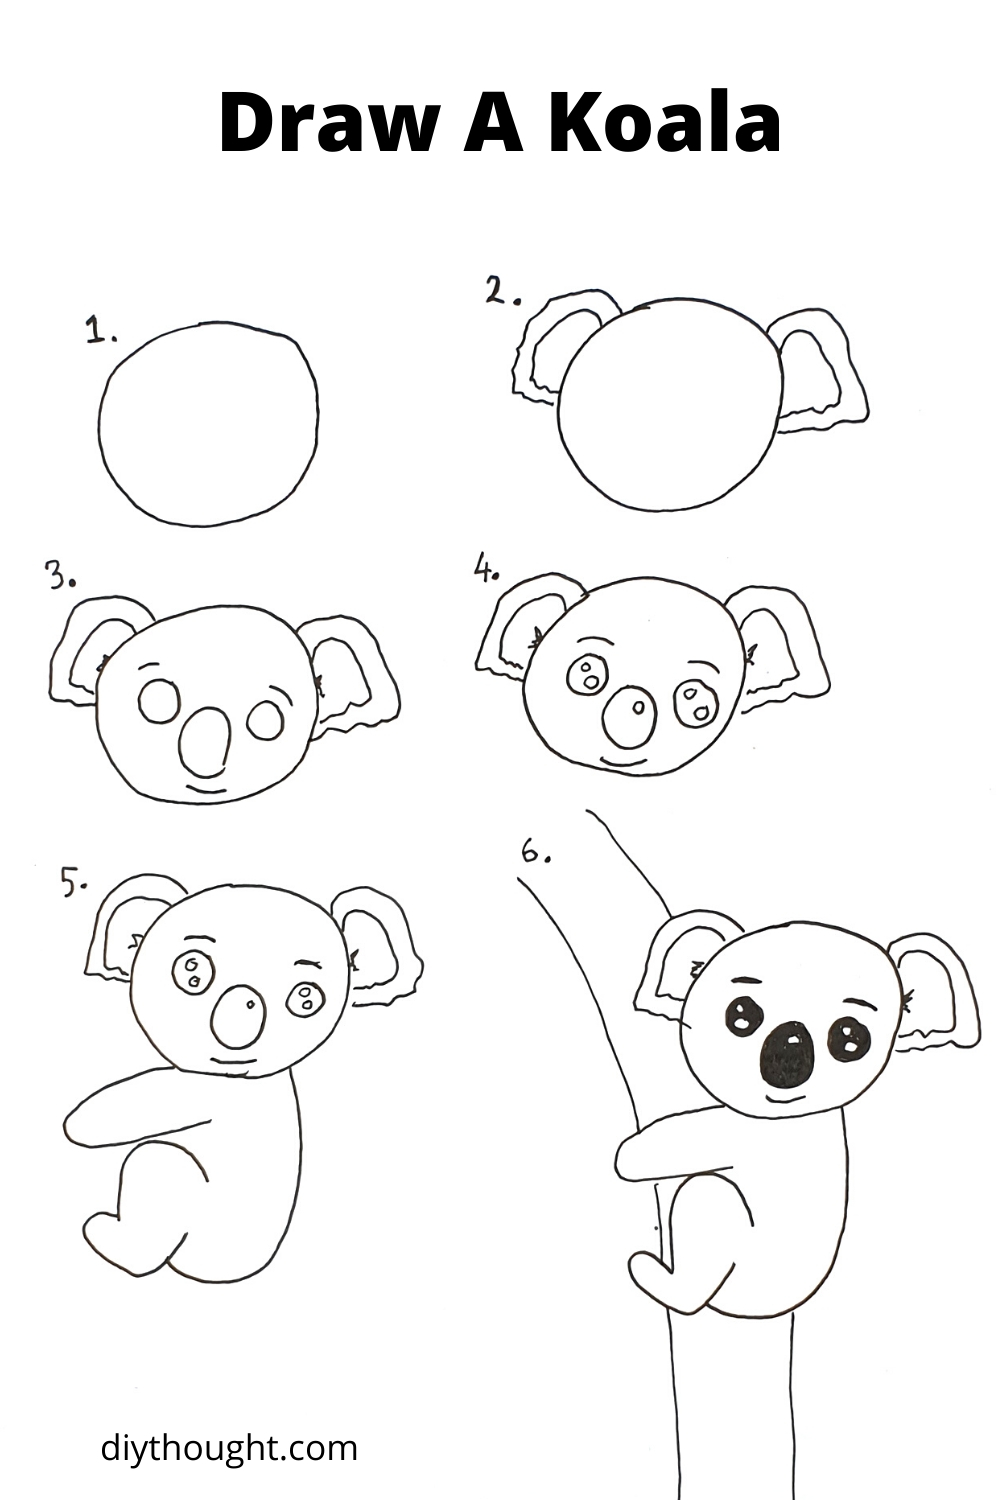 How To Draw A Koala & Kiwi - diy Thought